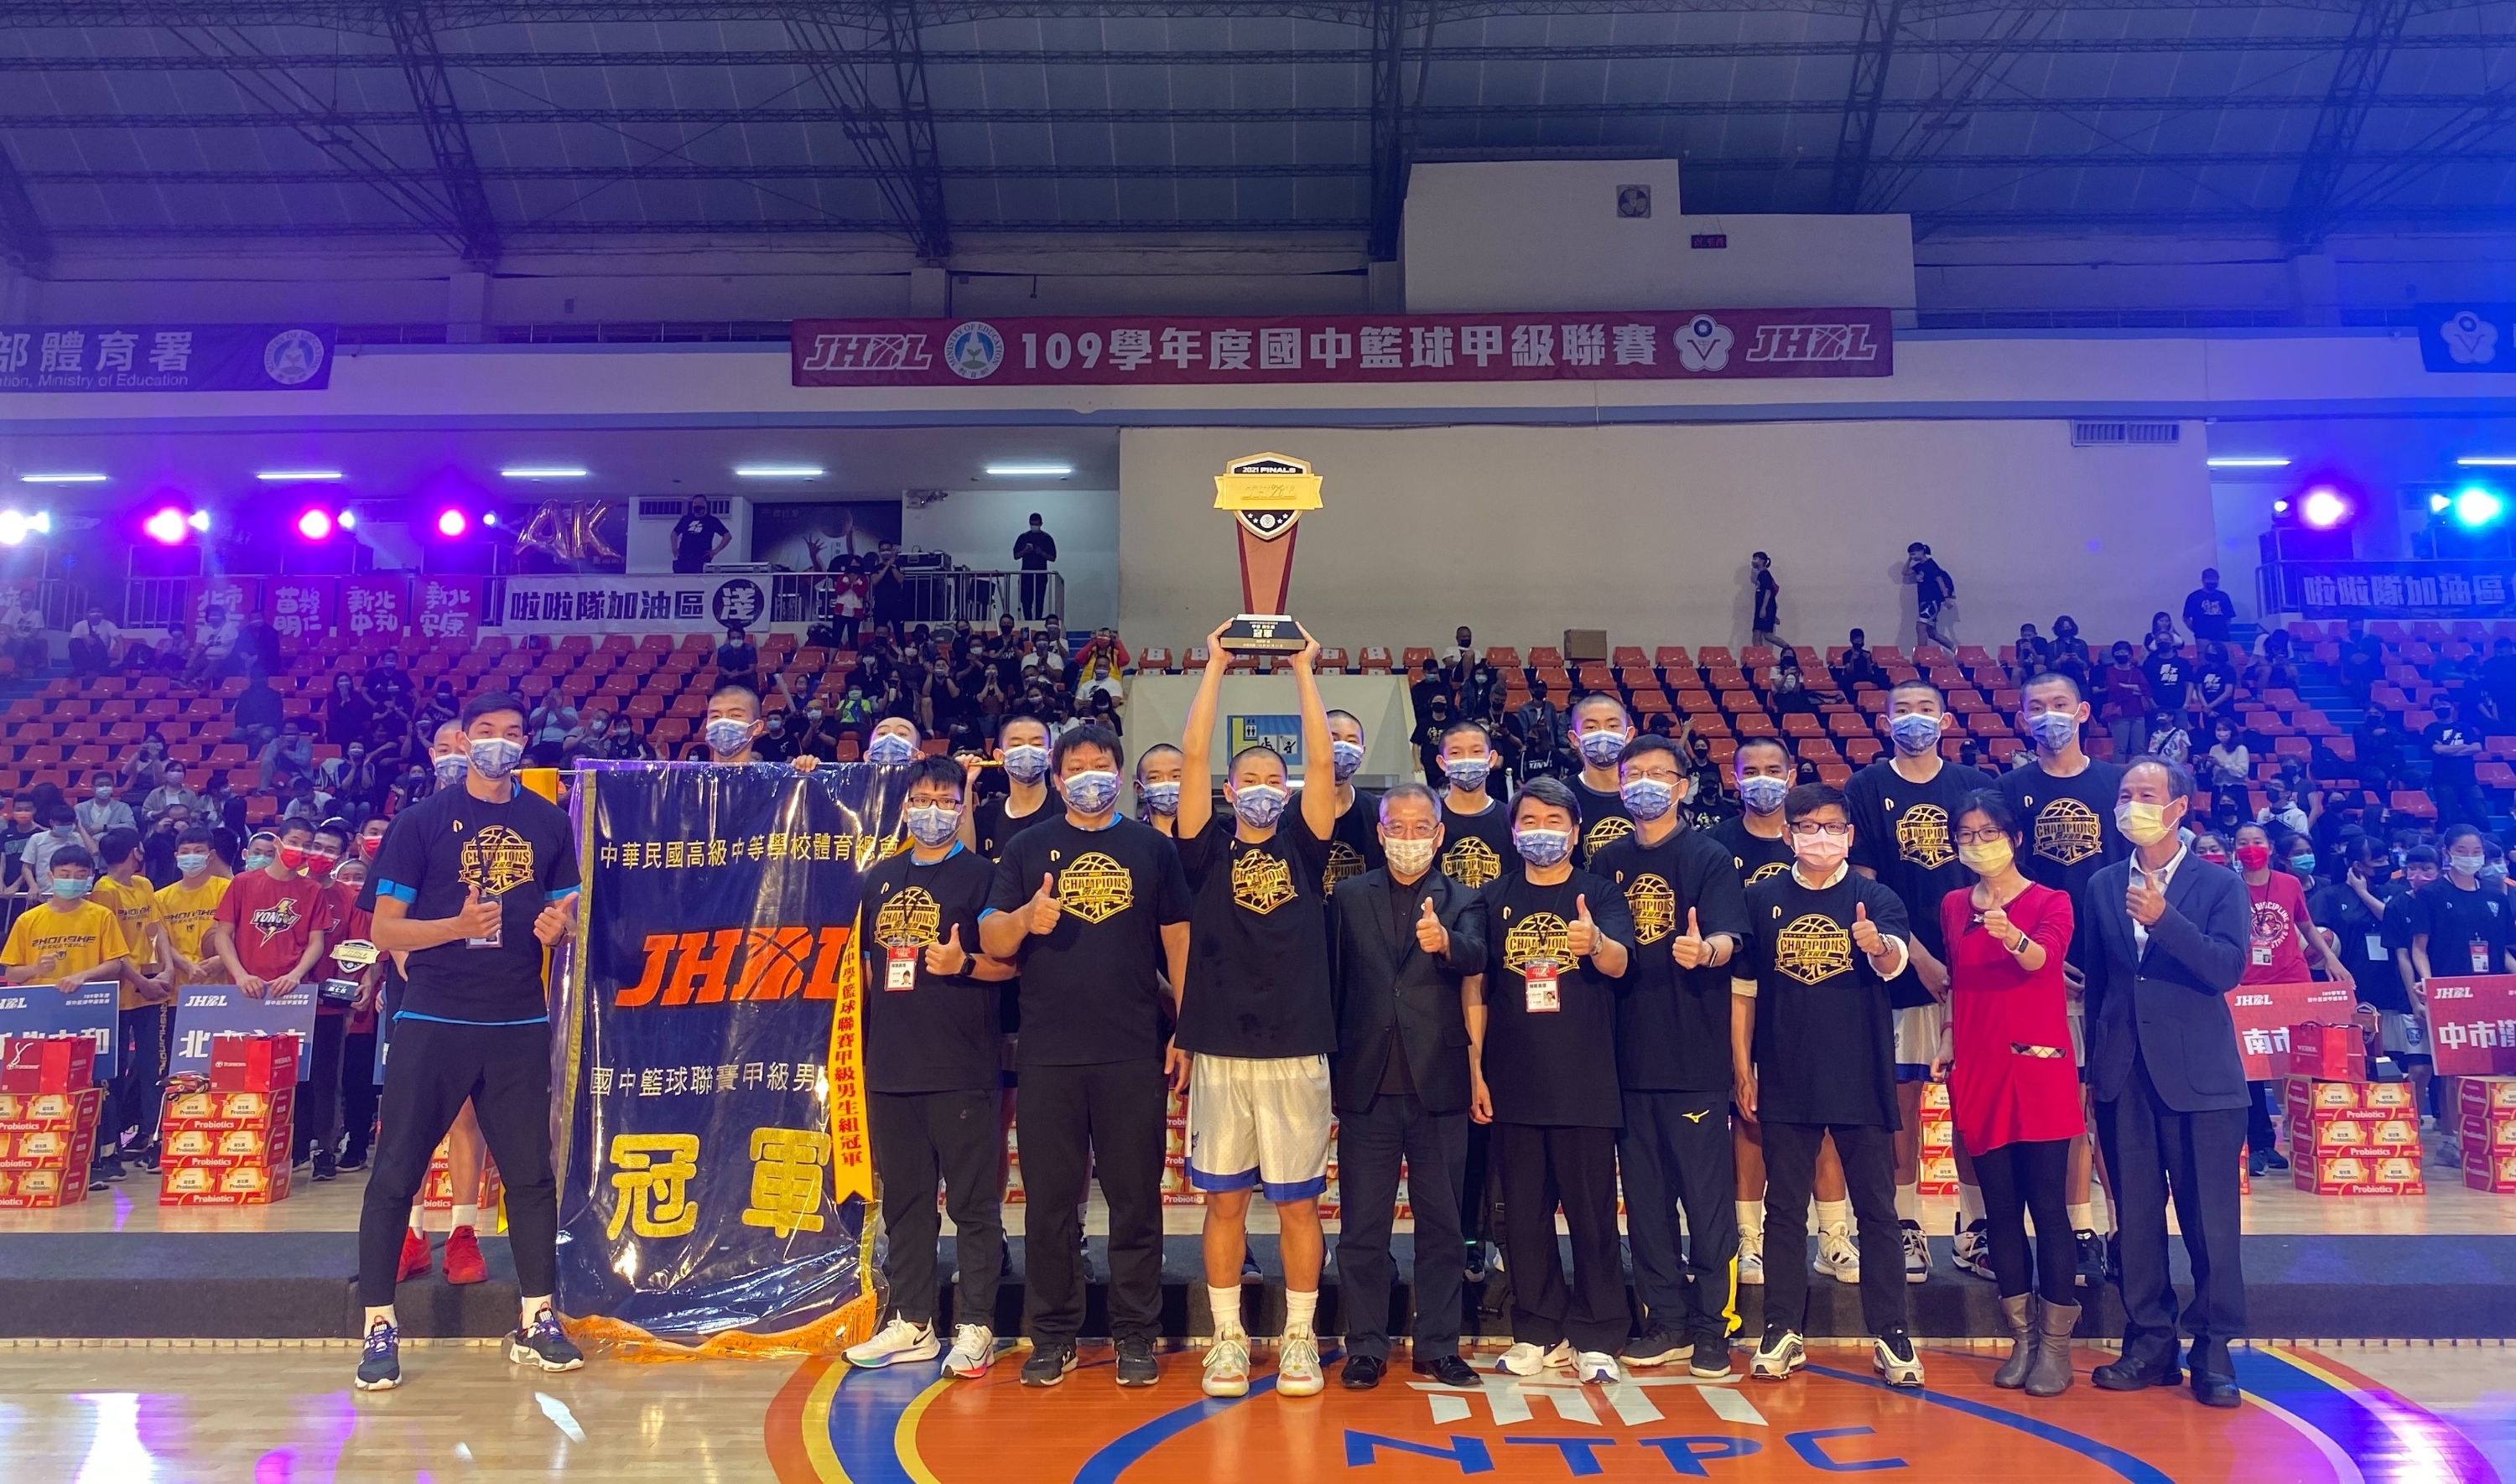 2.安康高中國中部奪得國中籃球甲級聯賽冠軍.